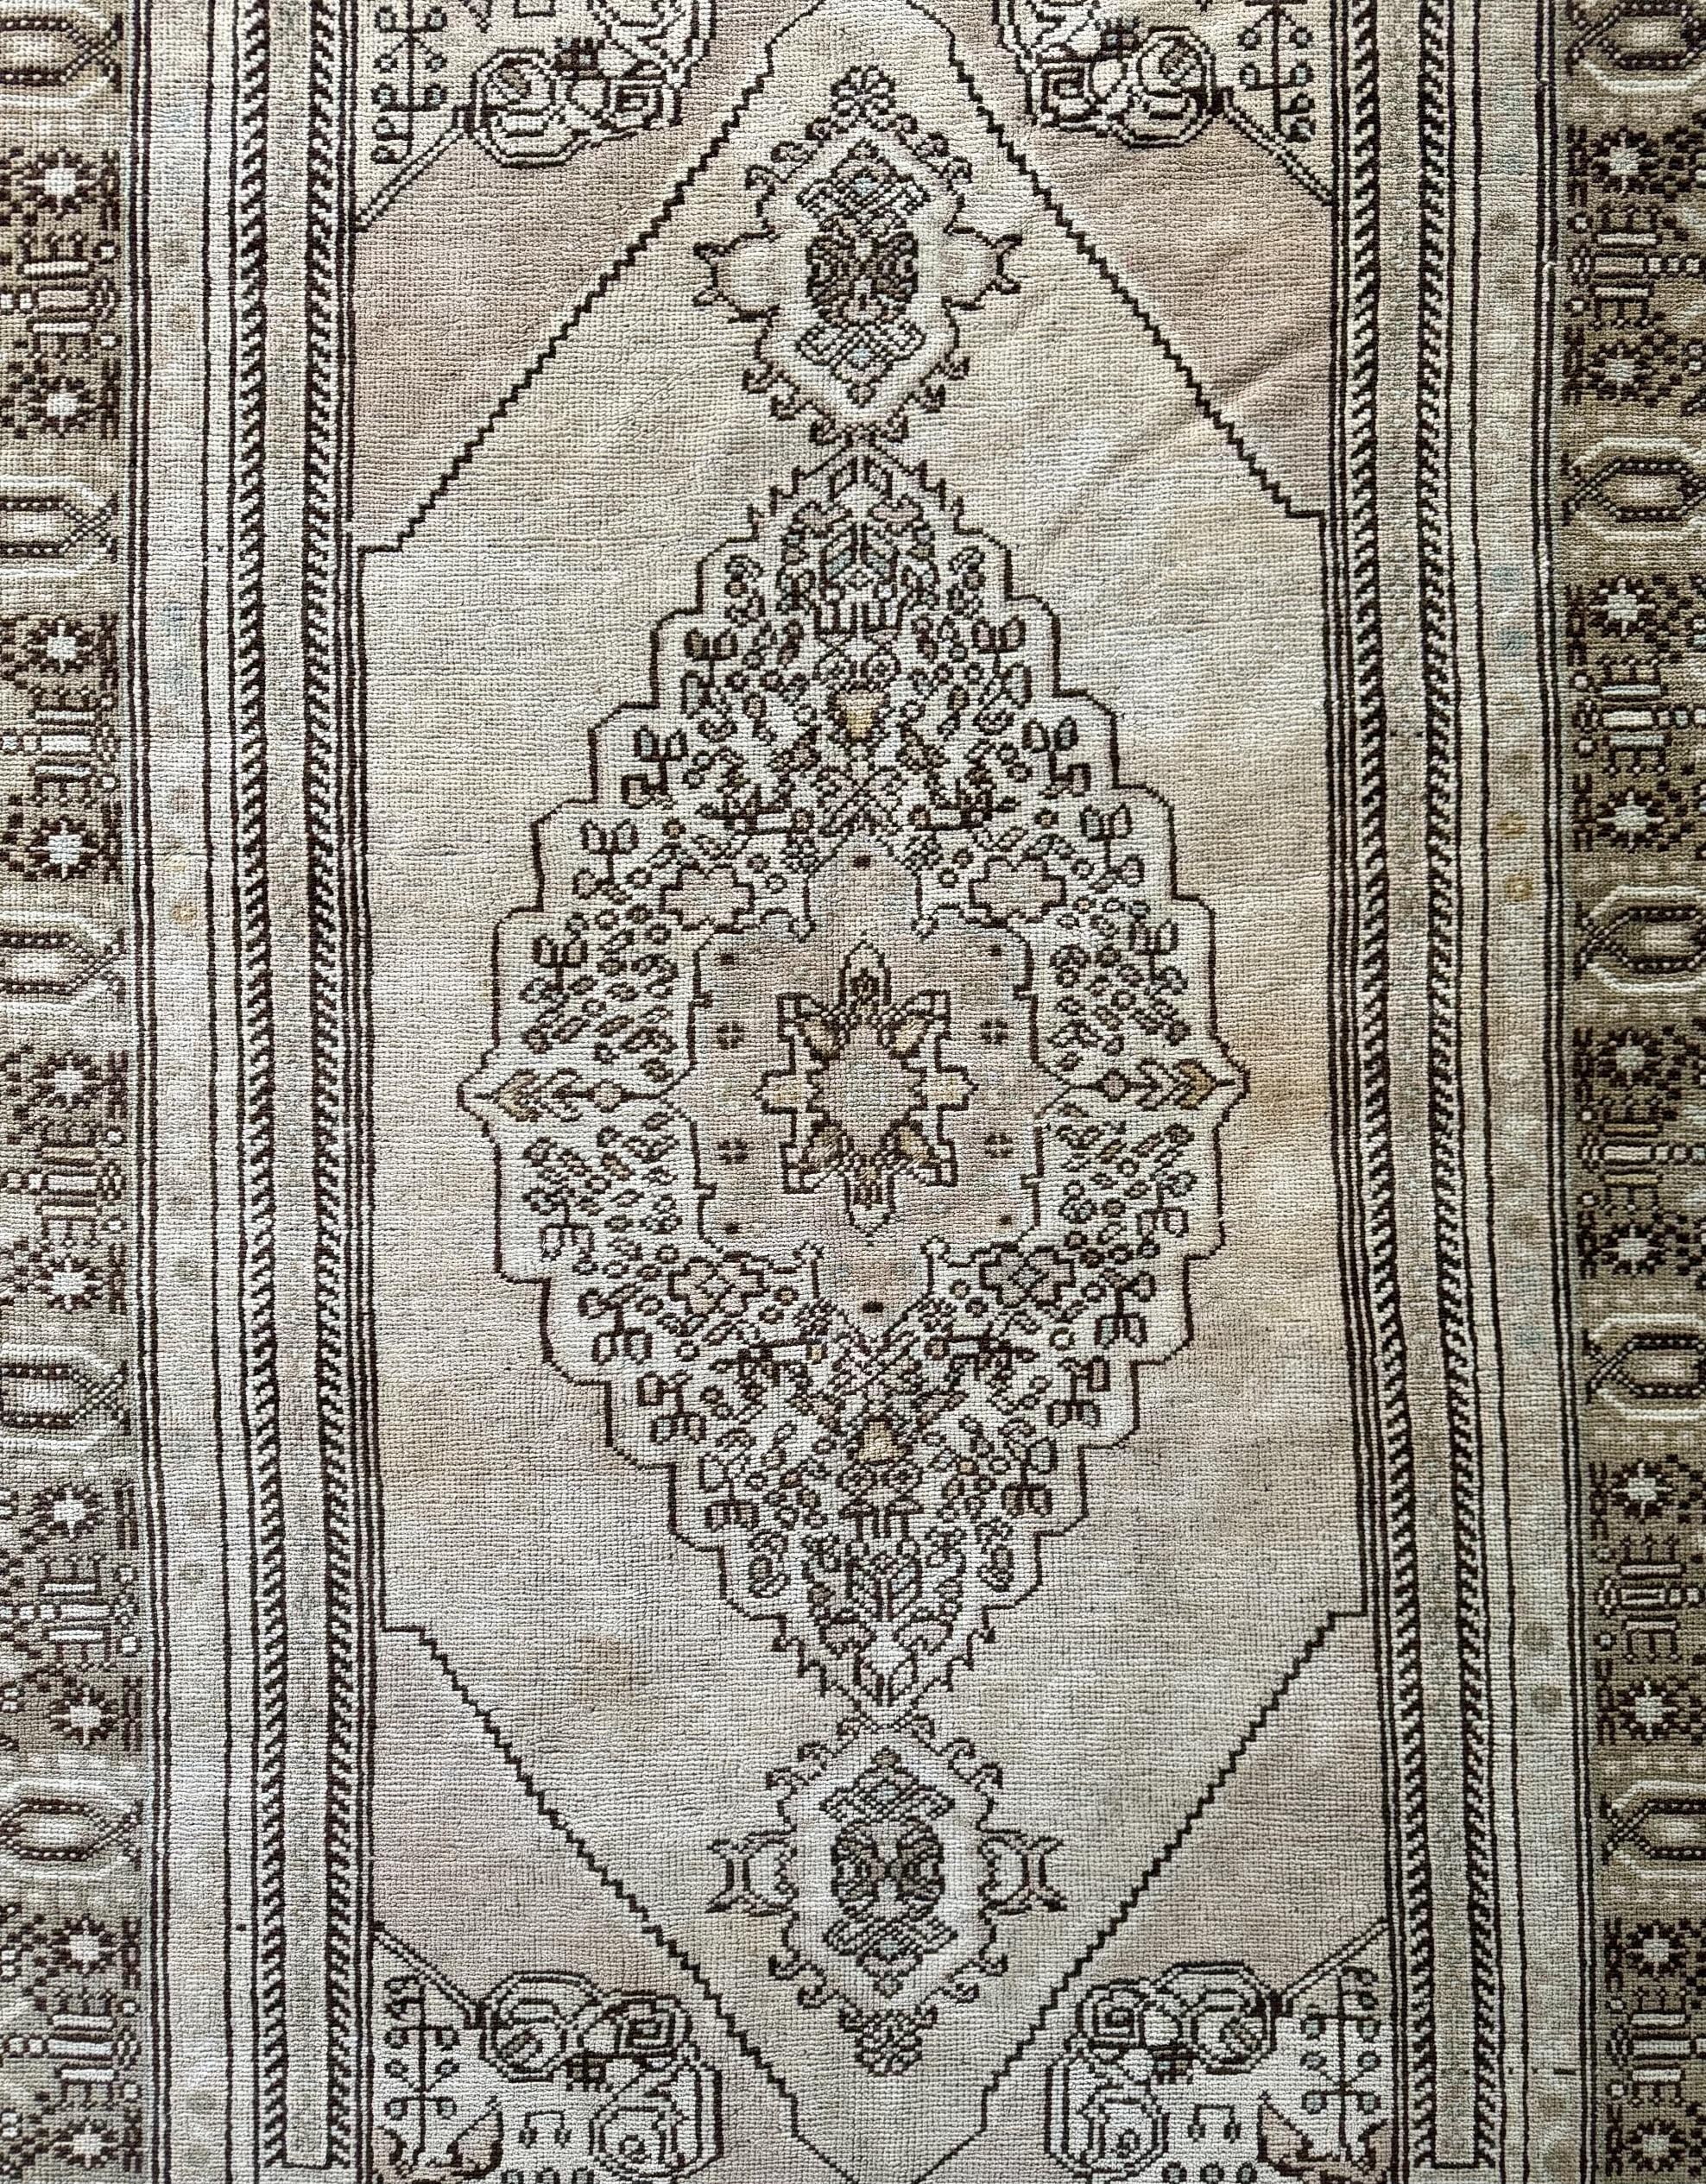 Ein neuwertiger Oushak-Teppich aus den 1940er Jahren ist ein Schatz, der historische Bedeutung, Handwerkskunst und zeitlose Schönheit vereint.

Oushak-Teppiche sind für ihre besonderen Webtechniken und exquisiten Designs bekannt, die aus der Region